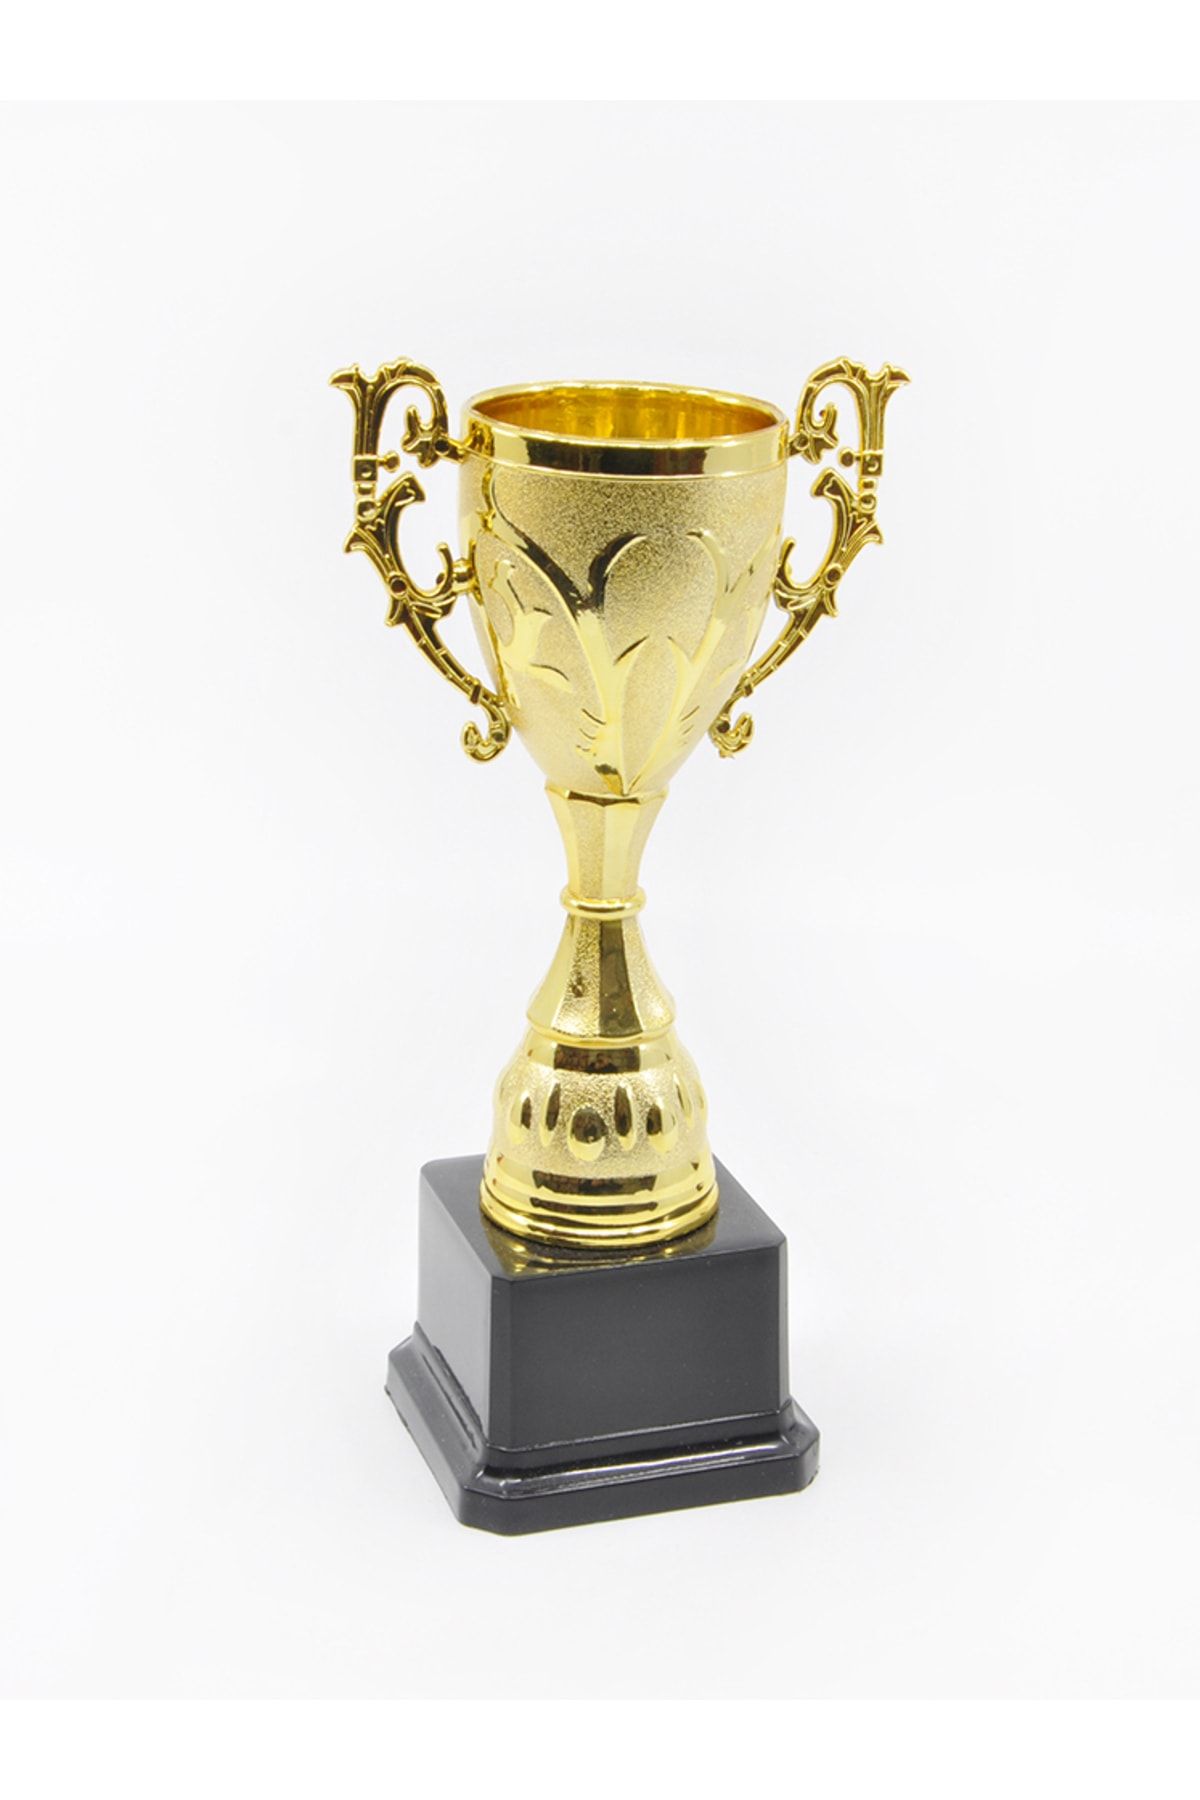 mor kırtasiye Plastik Ödül Kupası, Başarı Kupası, Kurdeleli Hediyelik Kupa Gold Renk